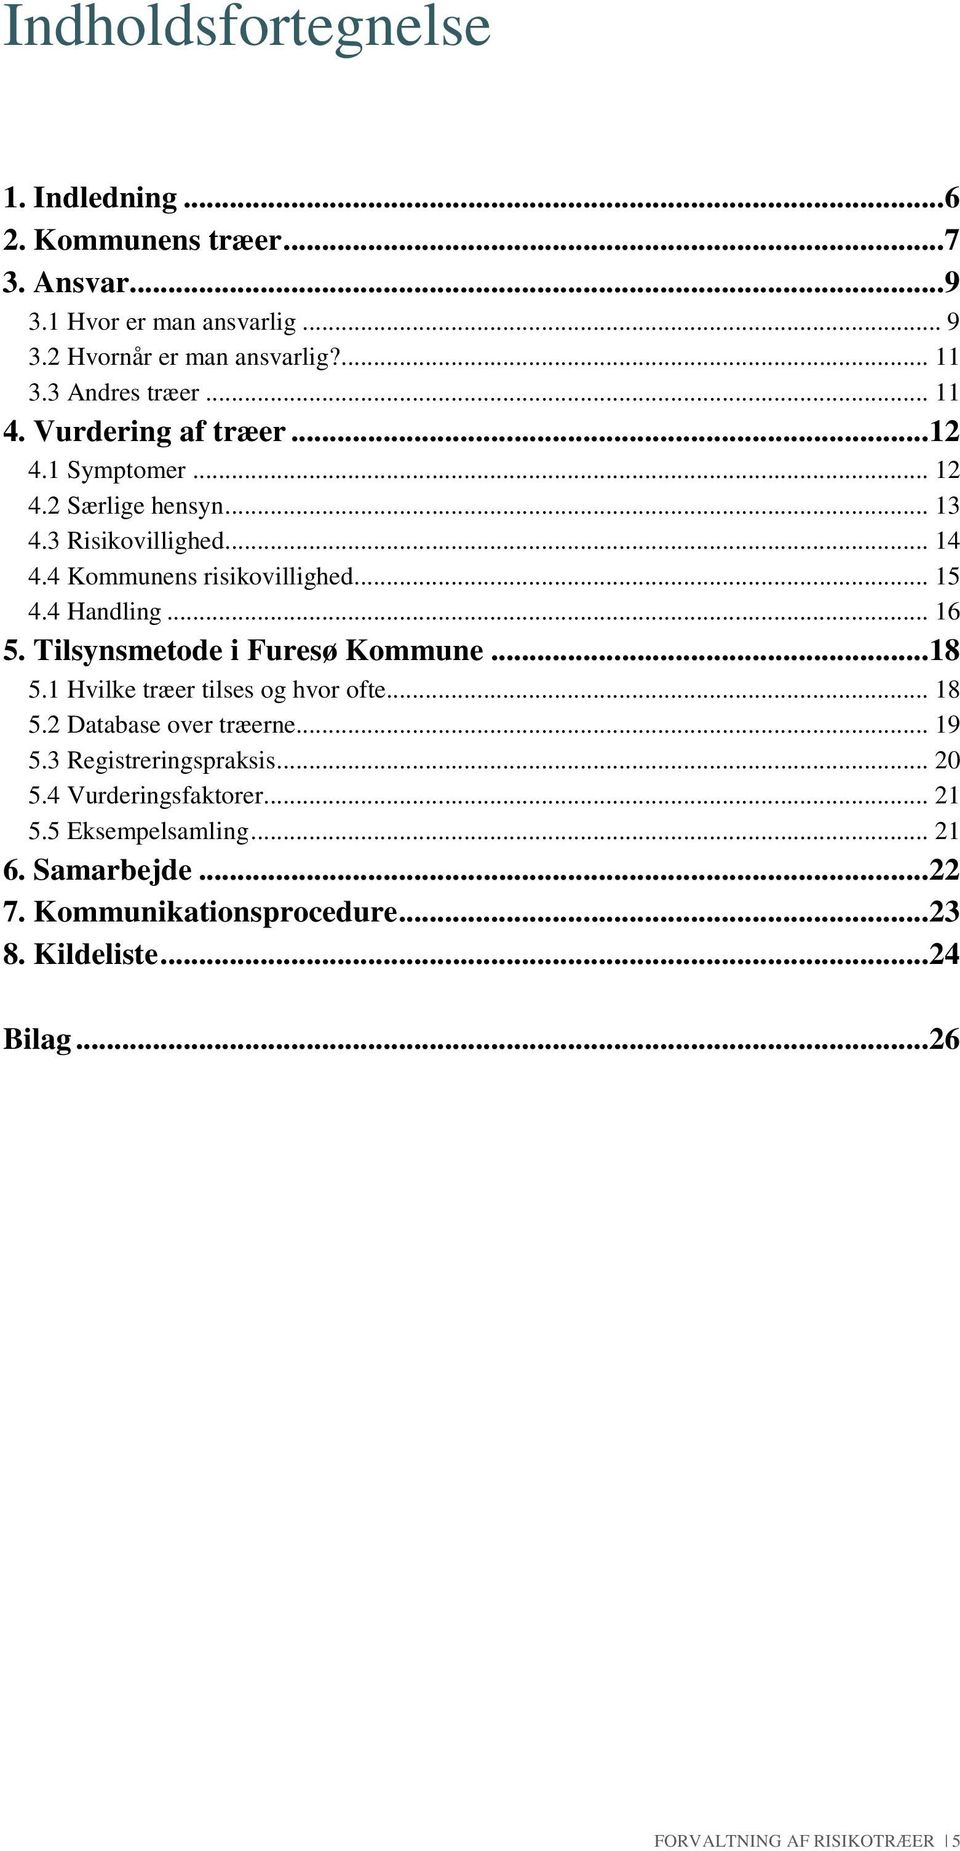 4 Handling... 16 5. Tilsynsmetode i Furesø Kommune... 18 5.1 Hvilke træer tilses og hvor ofte... 18 5.2 Database over træerne... 19 5.3 Registreringspraksis.